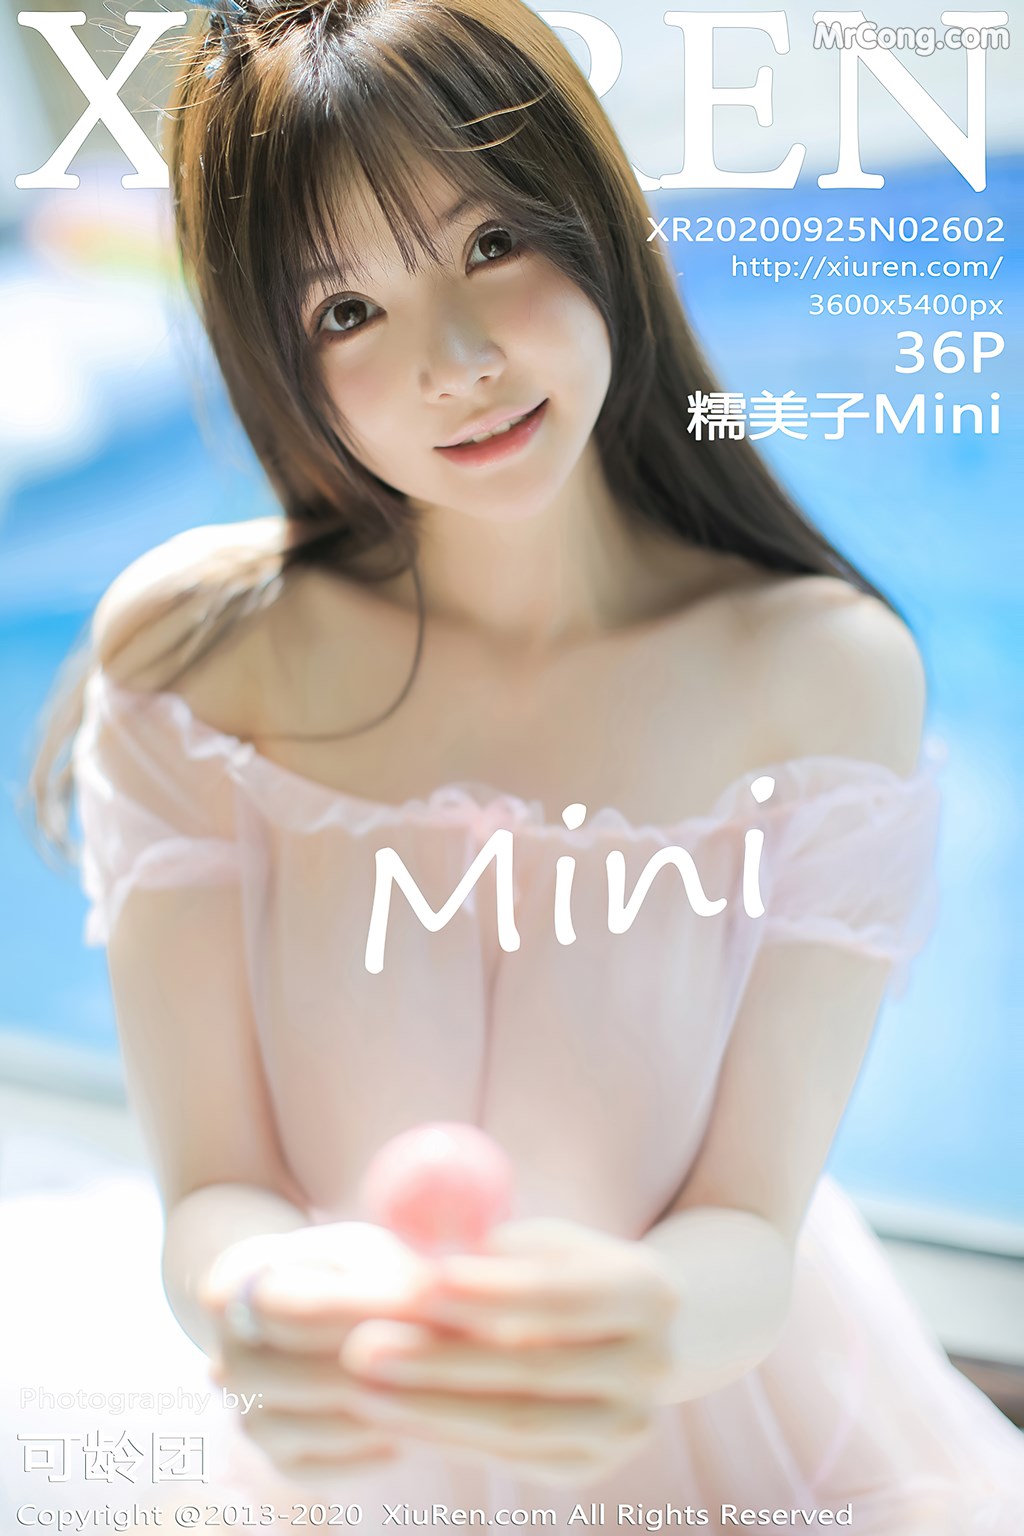 [XIUREN] No.2602 糯美子Mini Cover Photo